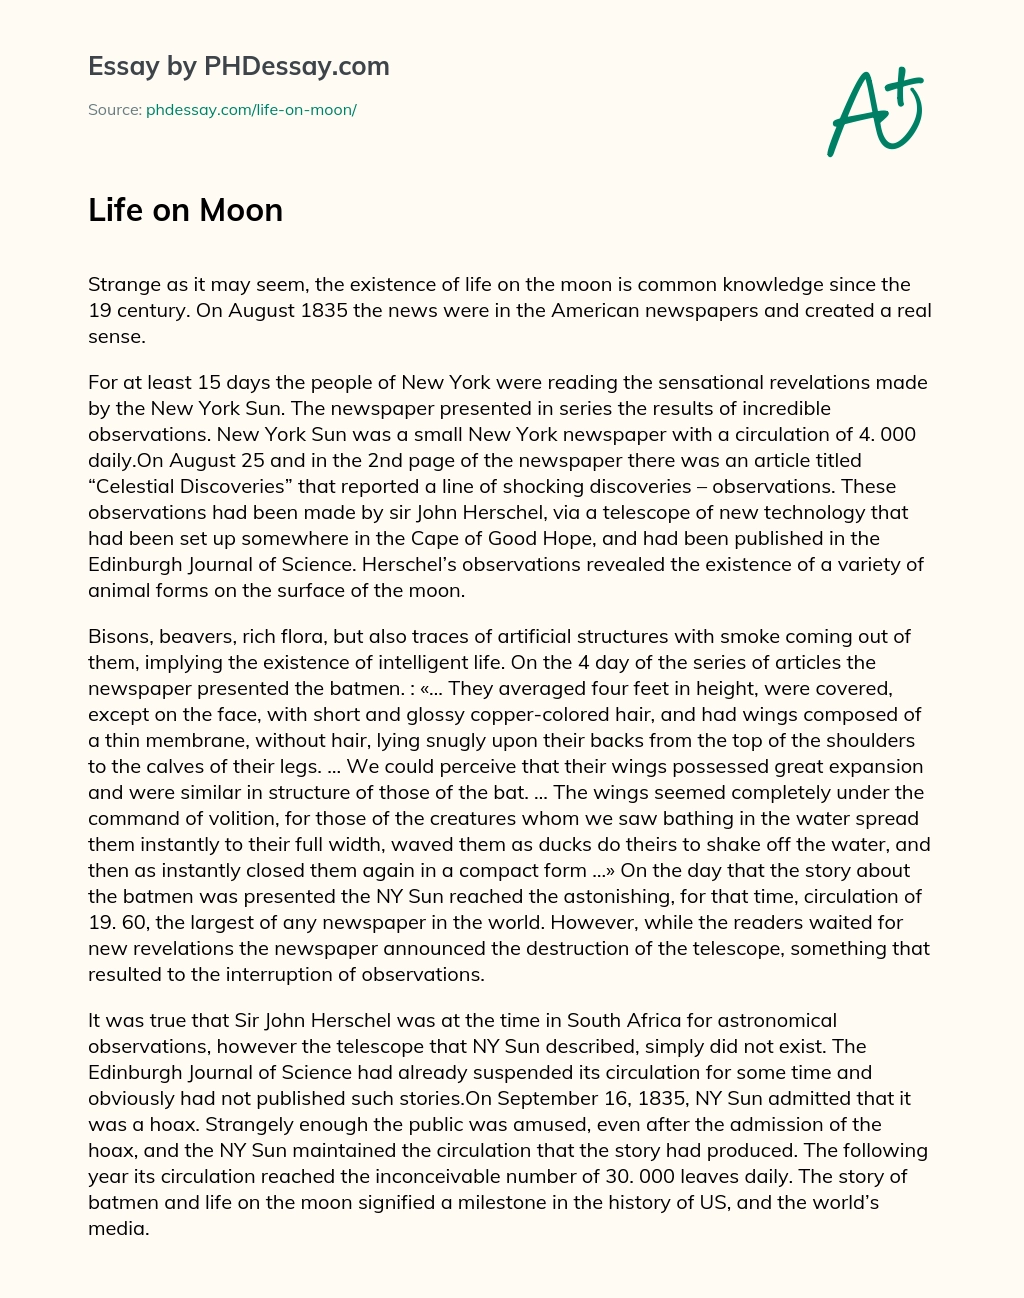 Life on Moon essay